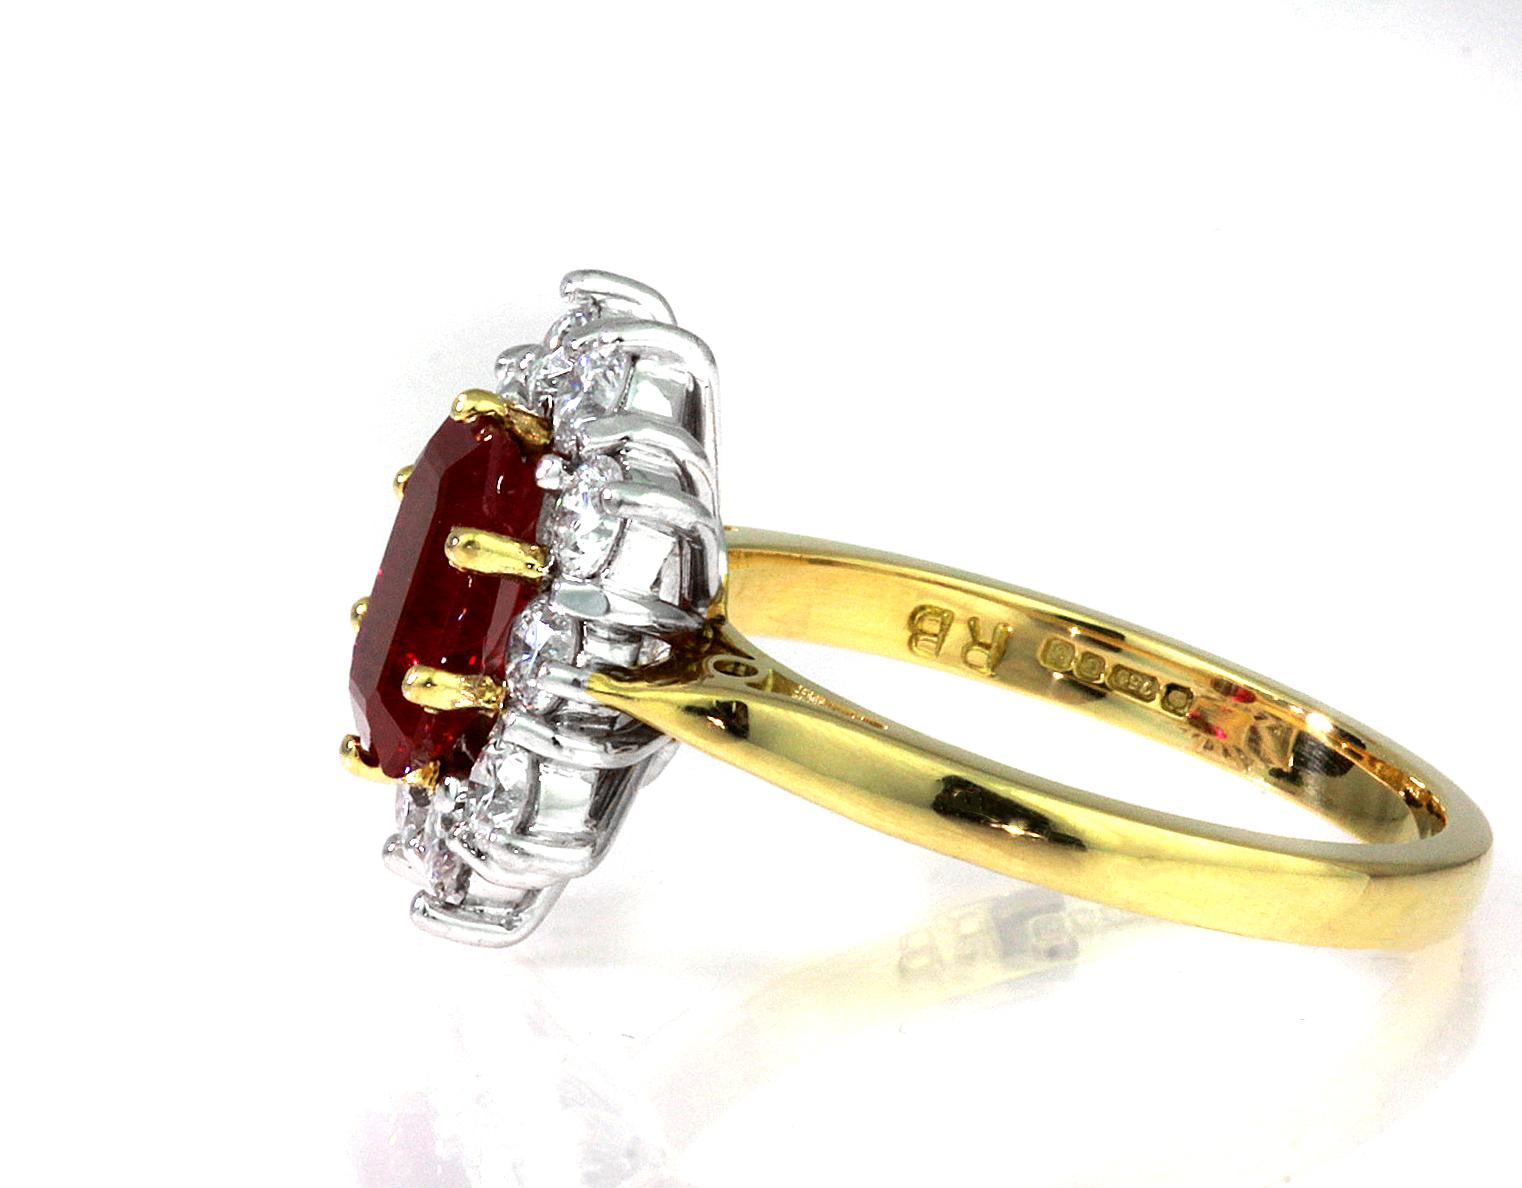 myanmar gold ring design